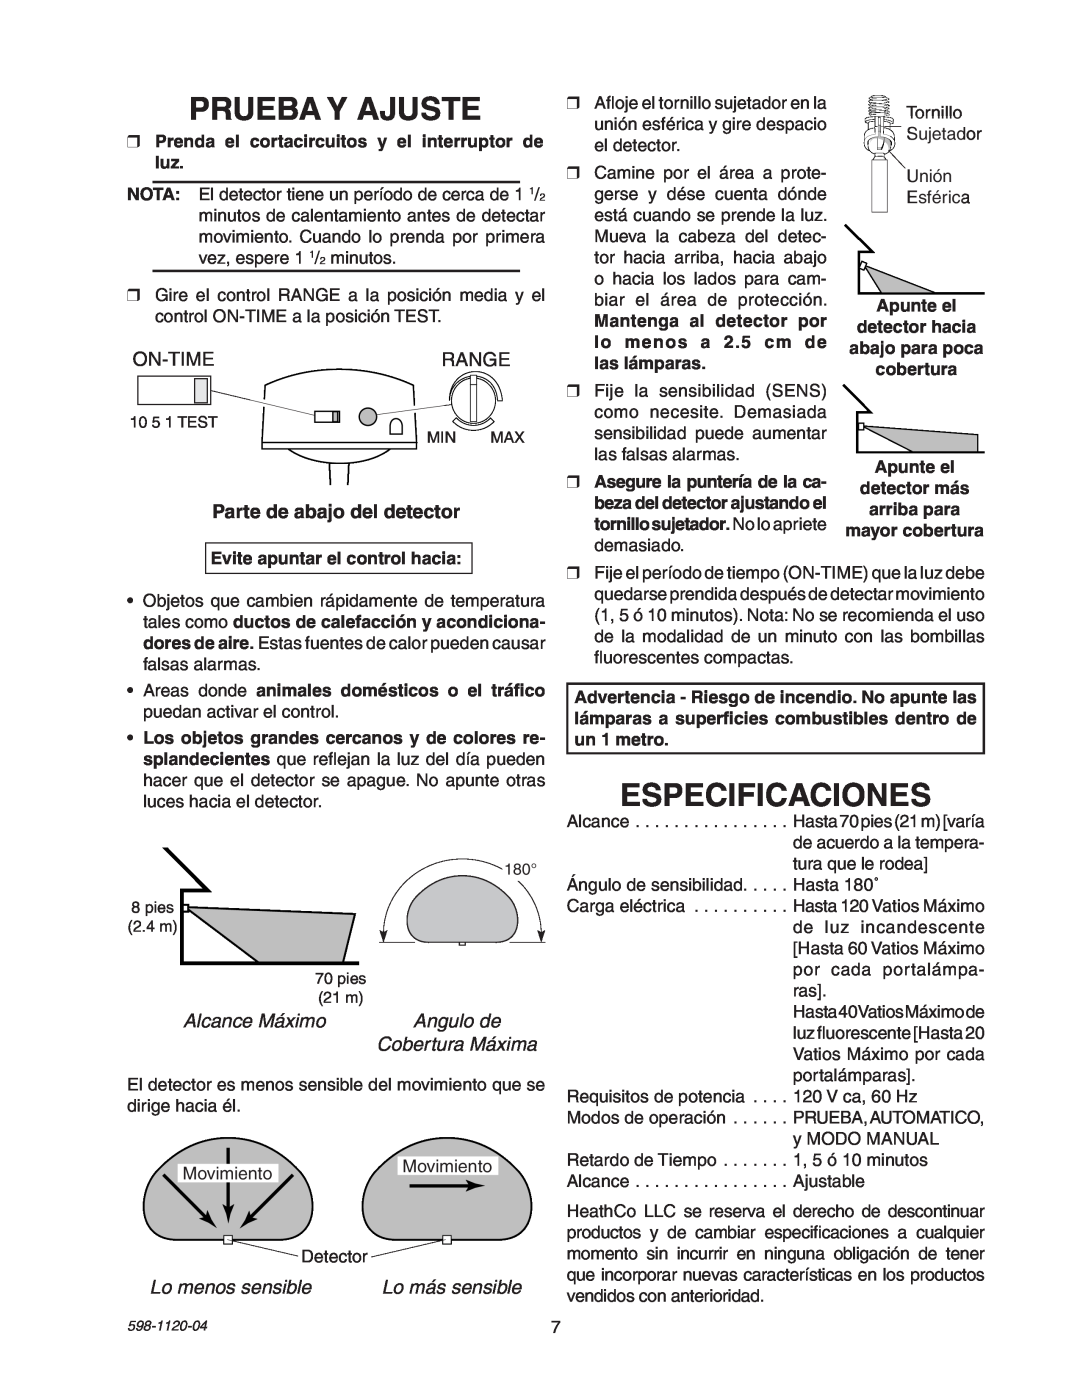 Heath Zenith SL-5710 manual Prueba Y Ajuste, Especificaciones, On-Timerange, Alcance Máximo, Angulo de, Cobertura Máxima 